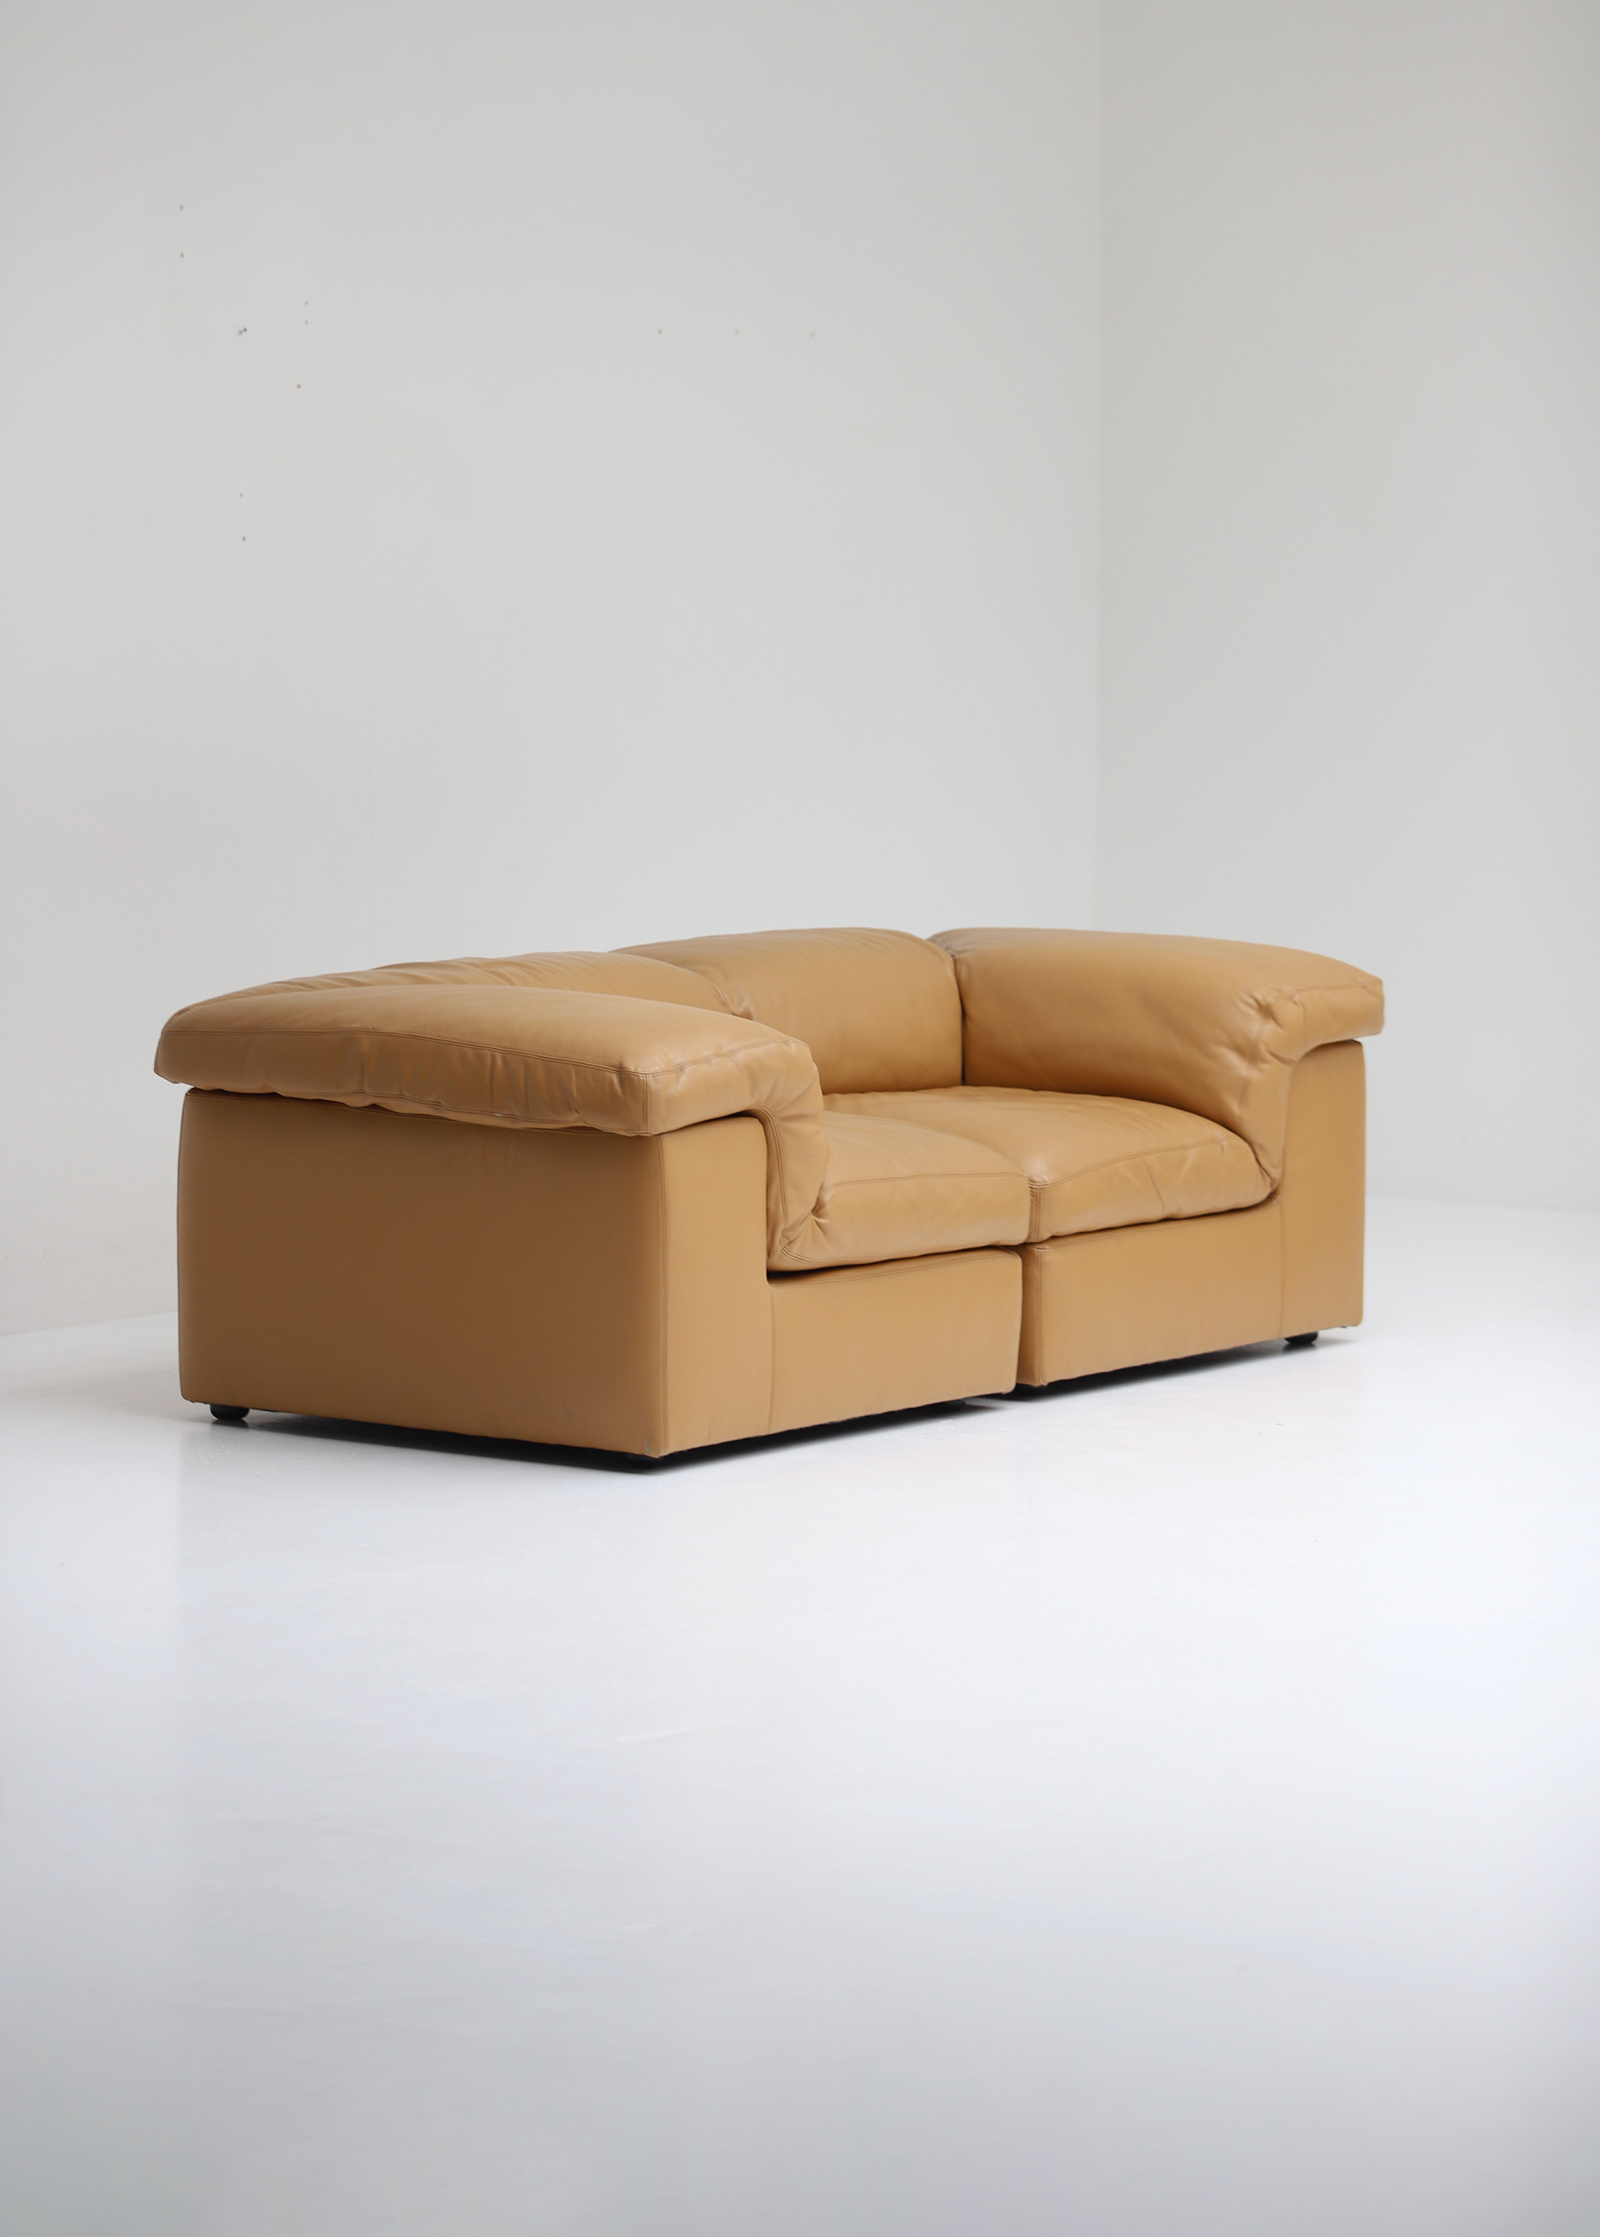 Durlet model 'Jeep' modular sofa setimage 7